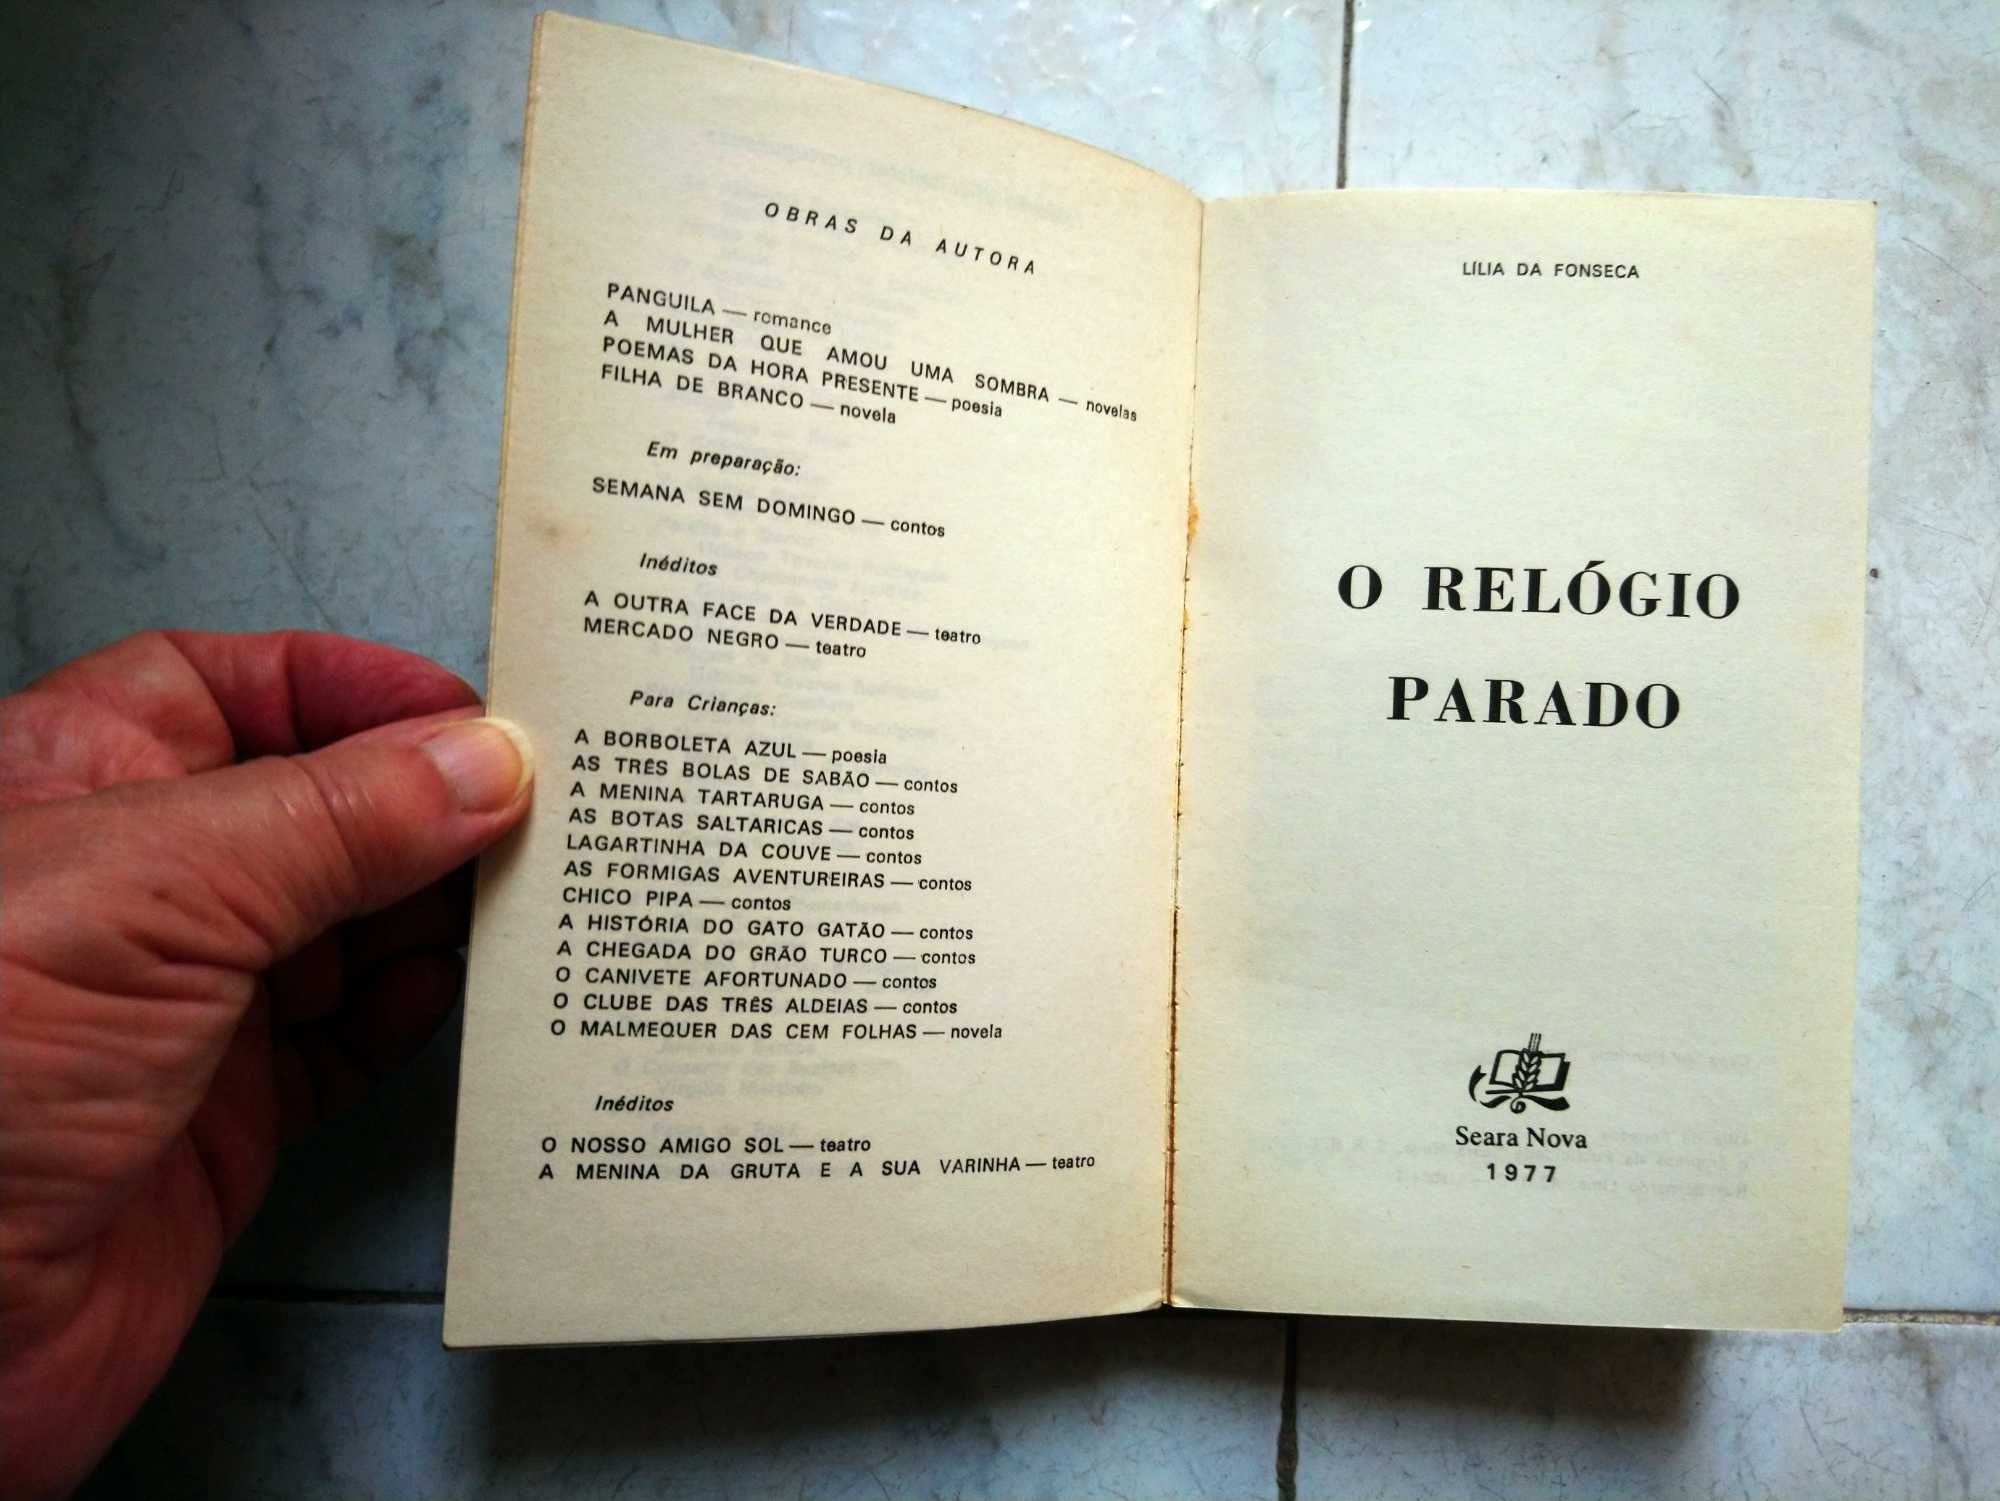 Livro “O Relógio Parado” de Lília da Fonseca (1977) e Outros